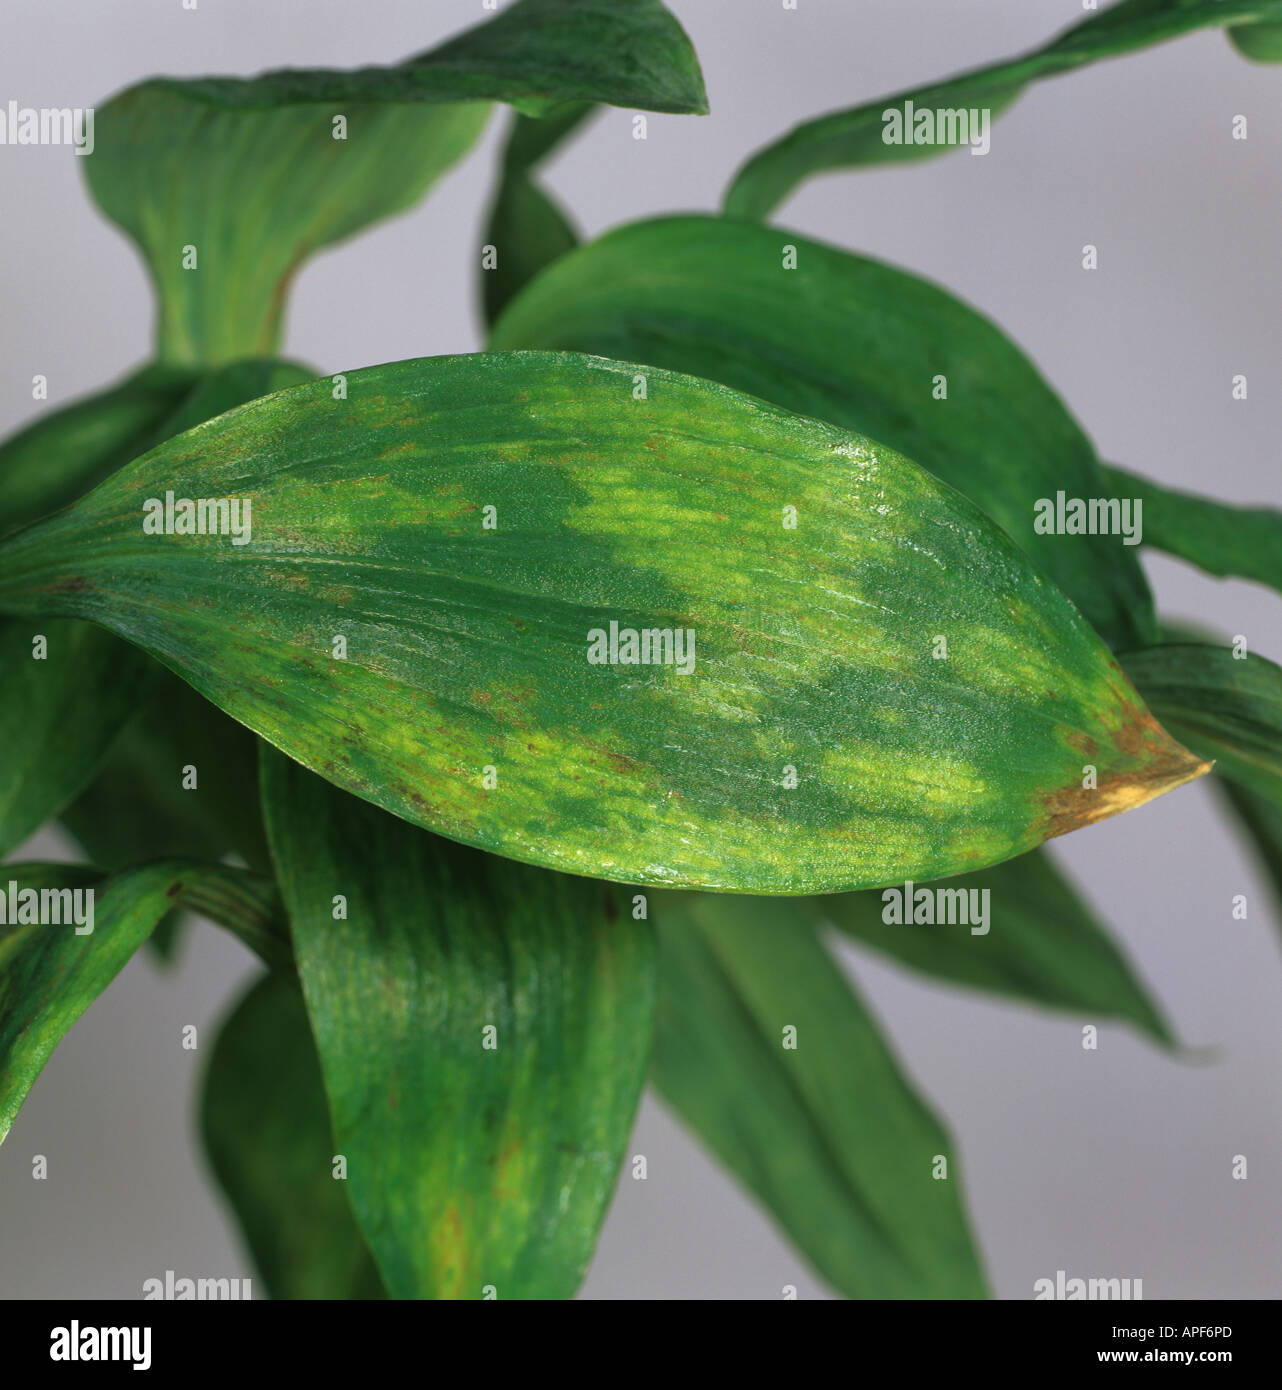 Peruanische Lilie Alstroemeria Spp mit Tomate entdeckt verwelken Virus Symptome auf die Blätter Stockfoto